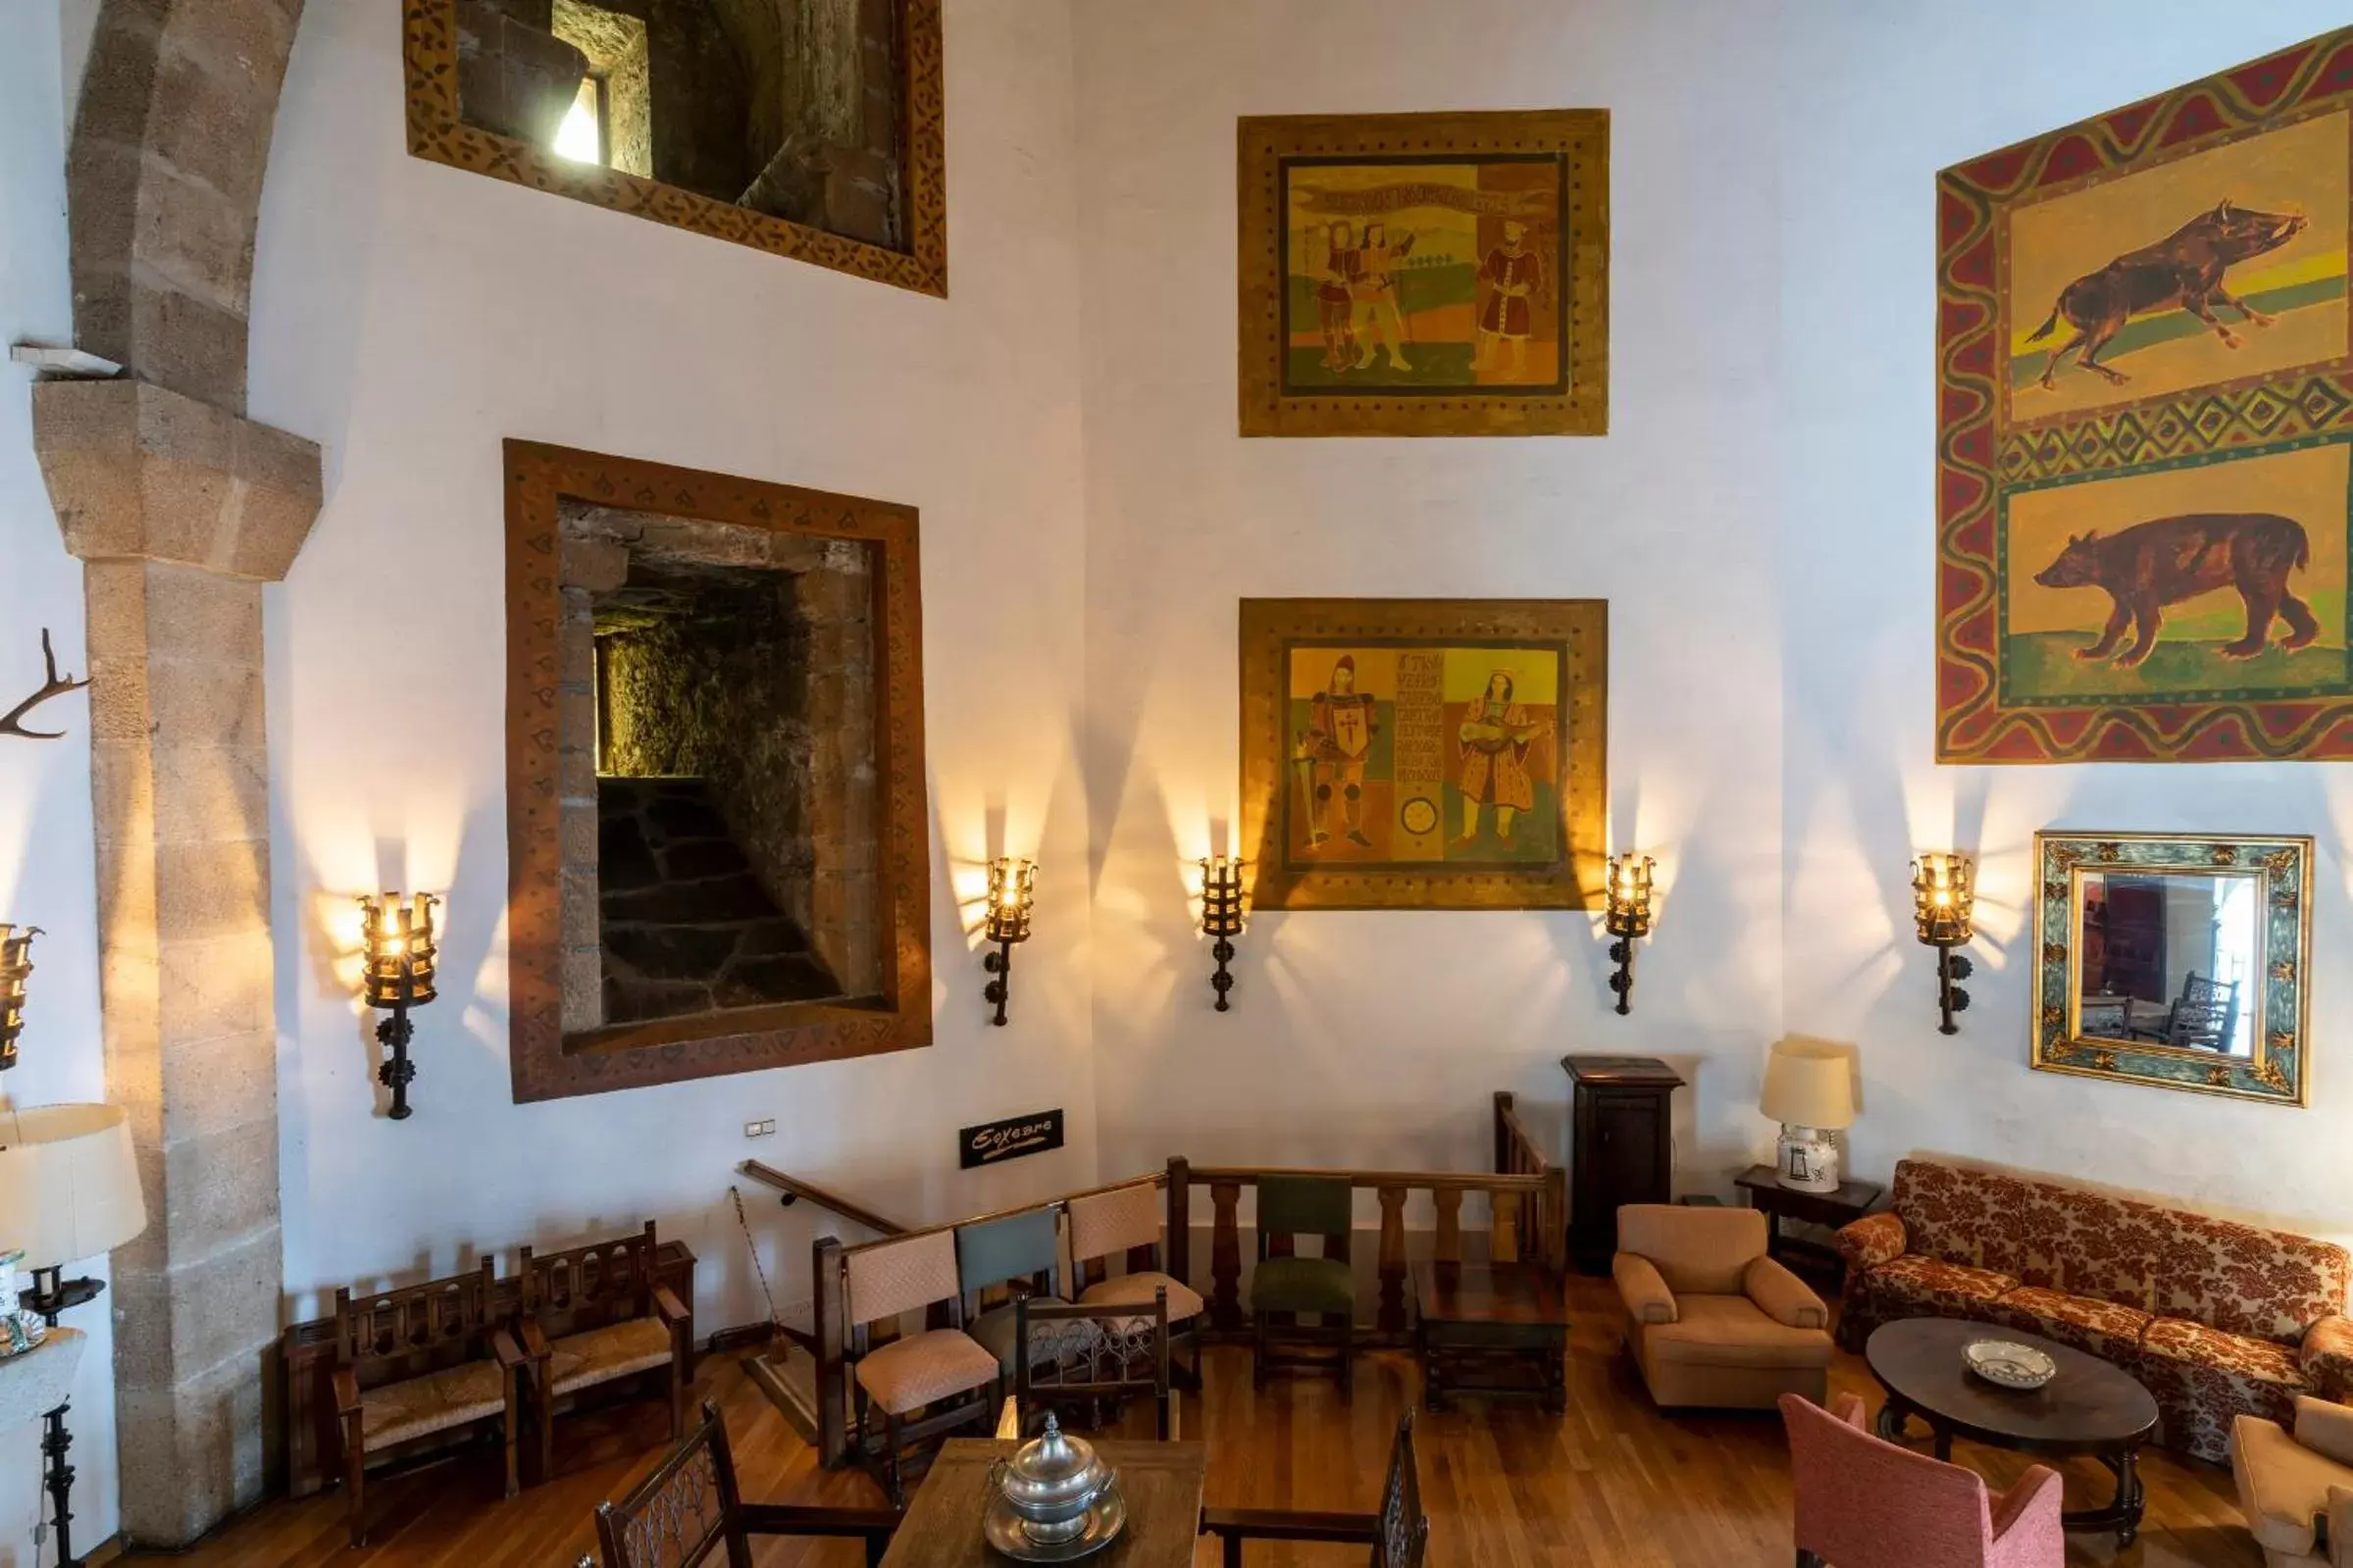 Lobby or reception, Restaurant/Places to Eat in Parador de Vilalba